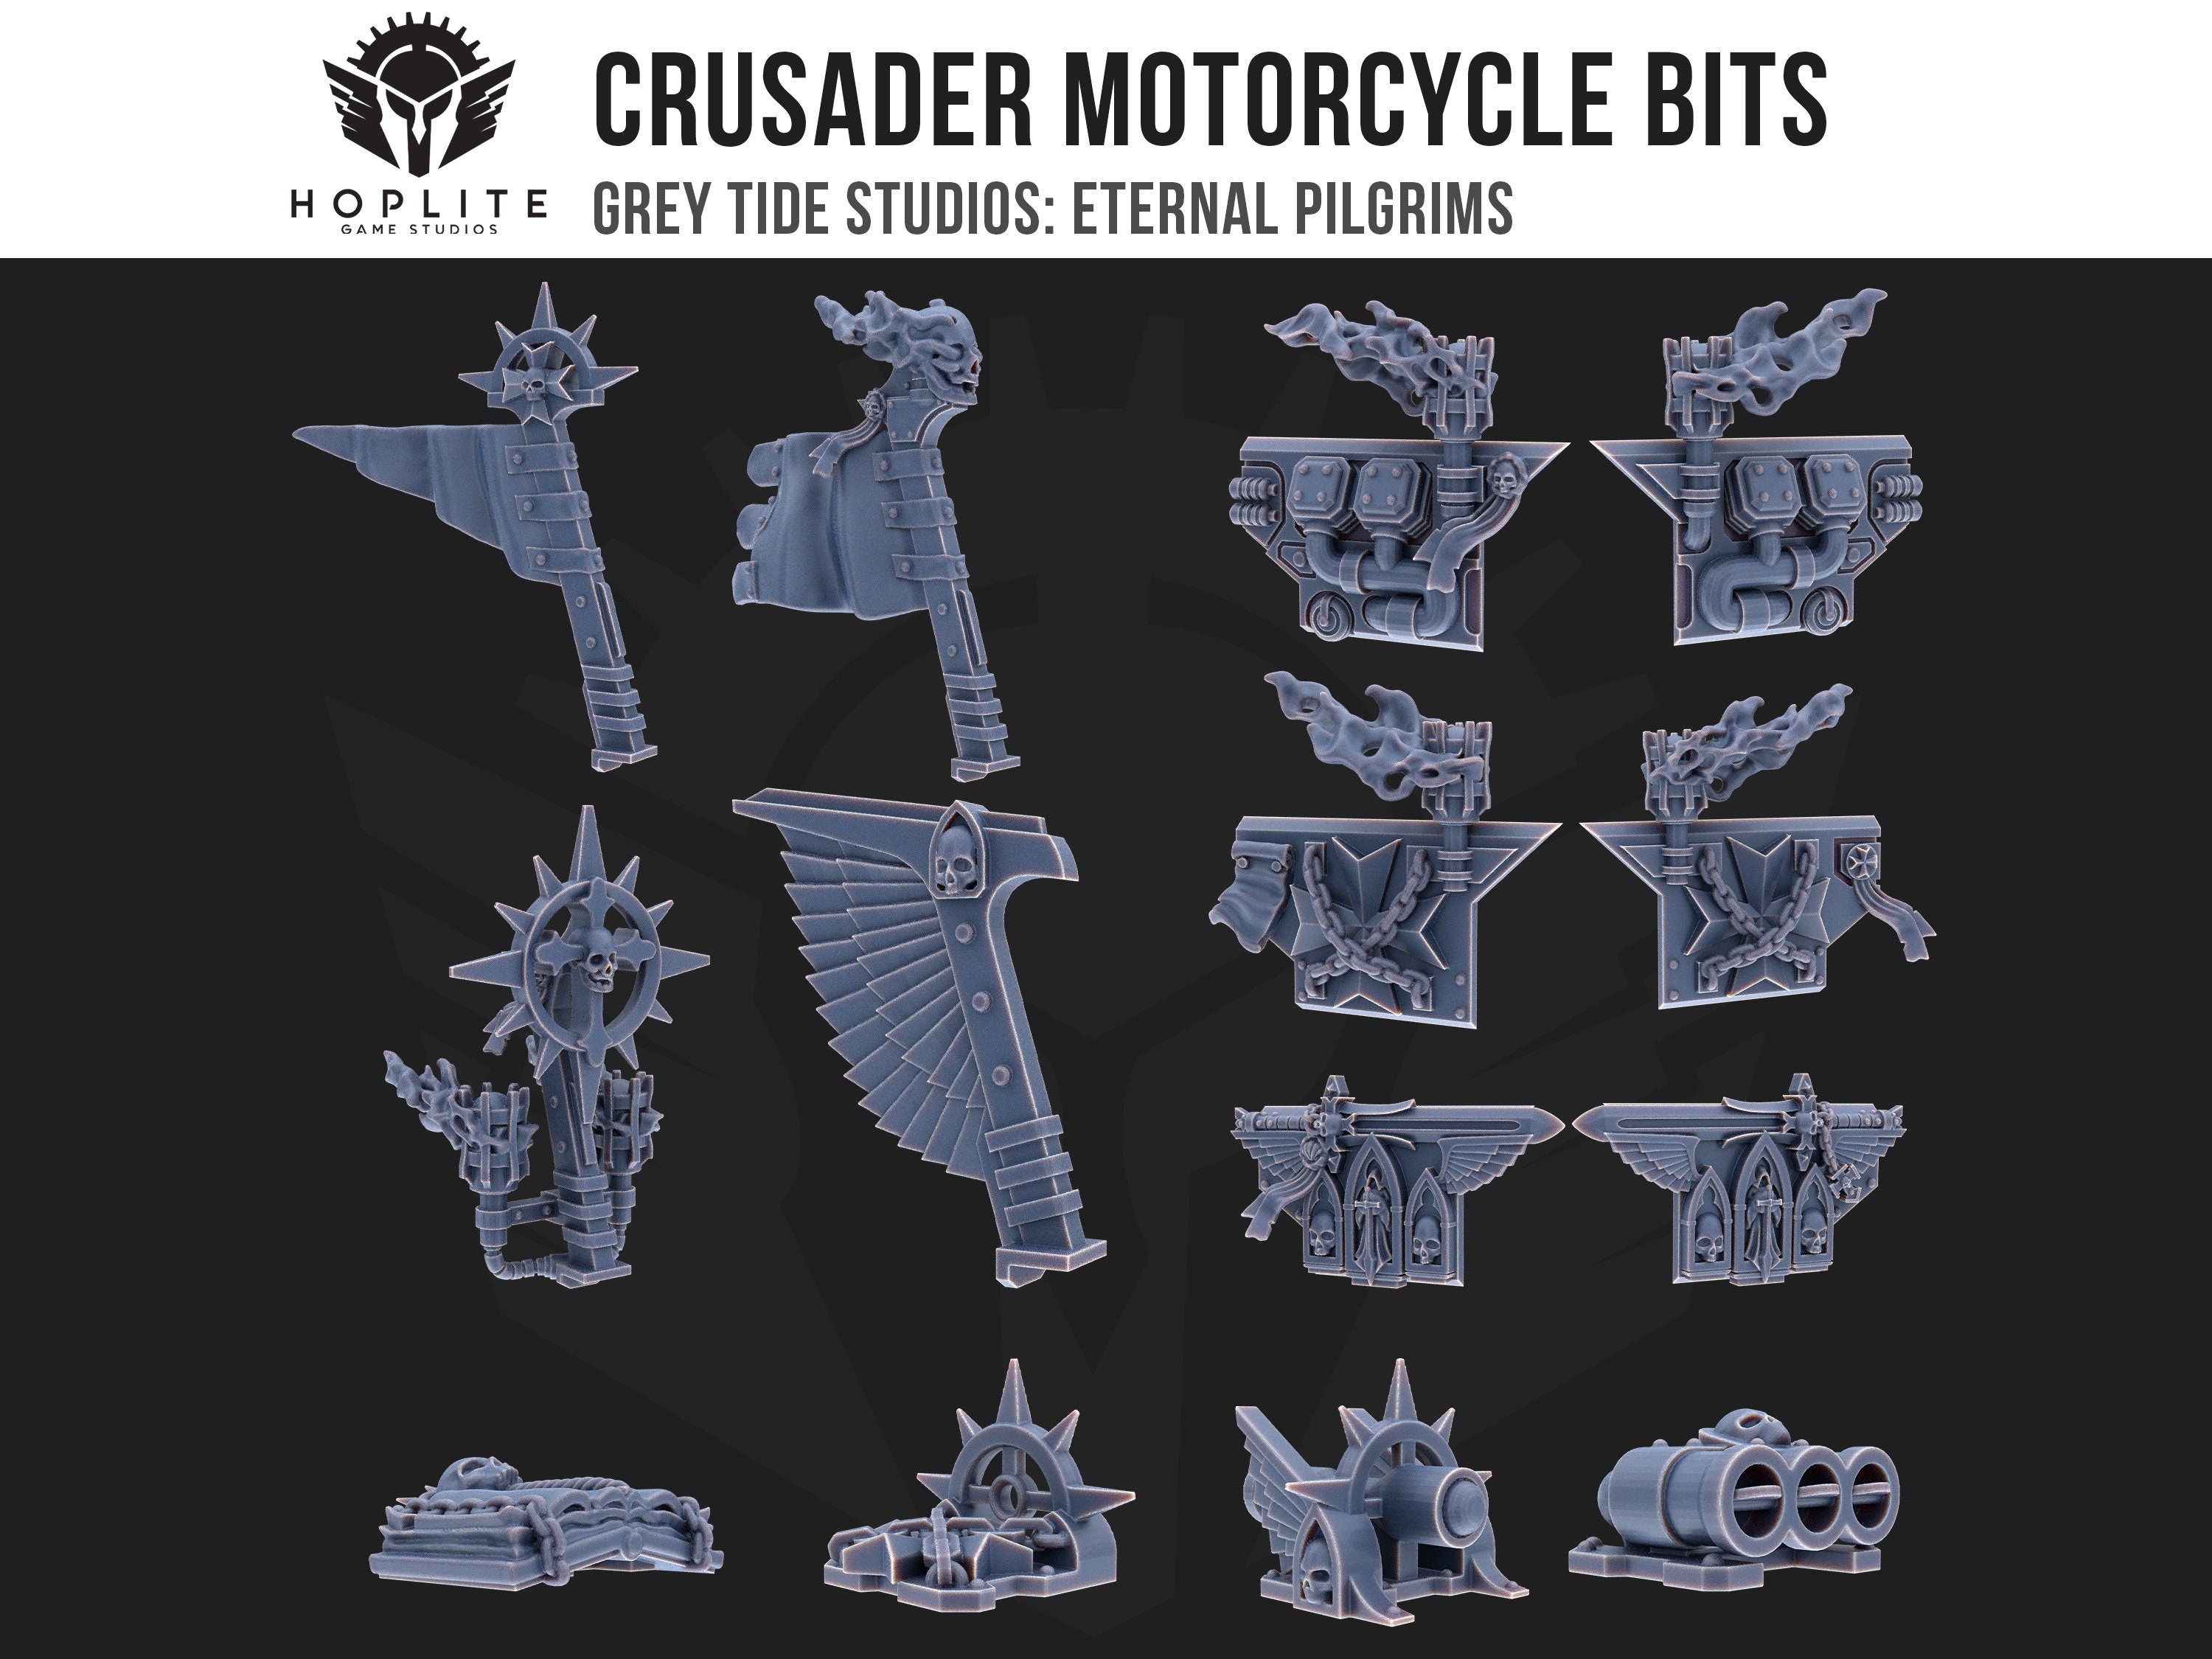 Brocas para motocicleta Crusader | Estudios de marea gris | Peregrinos eternos | Piezas y brocas de conversión